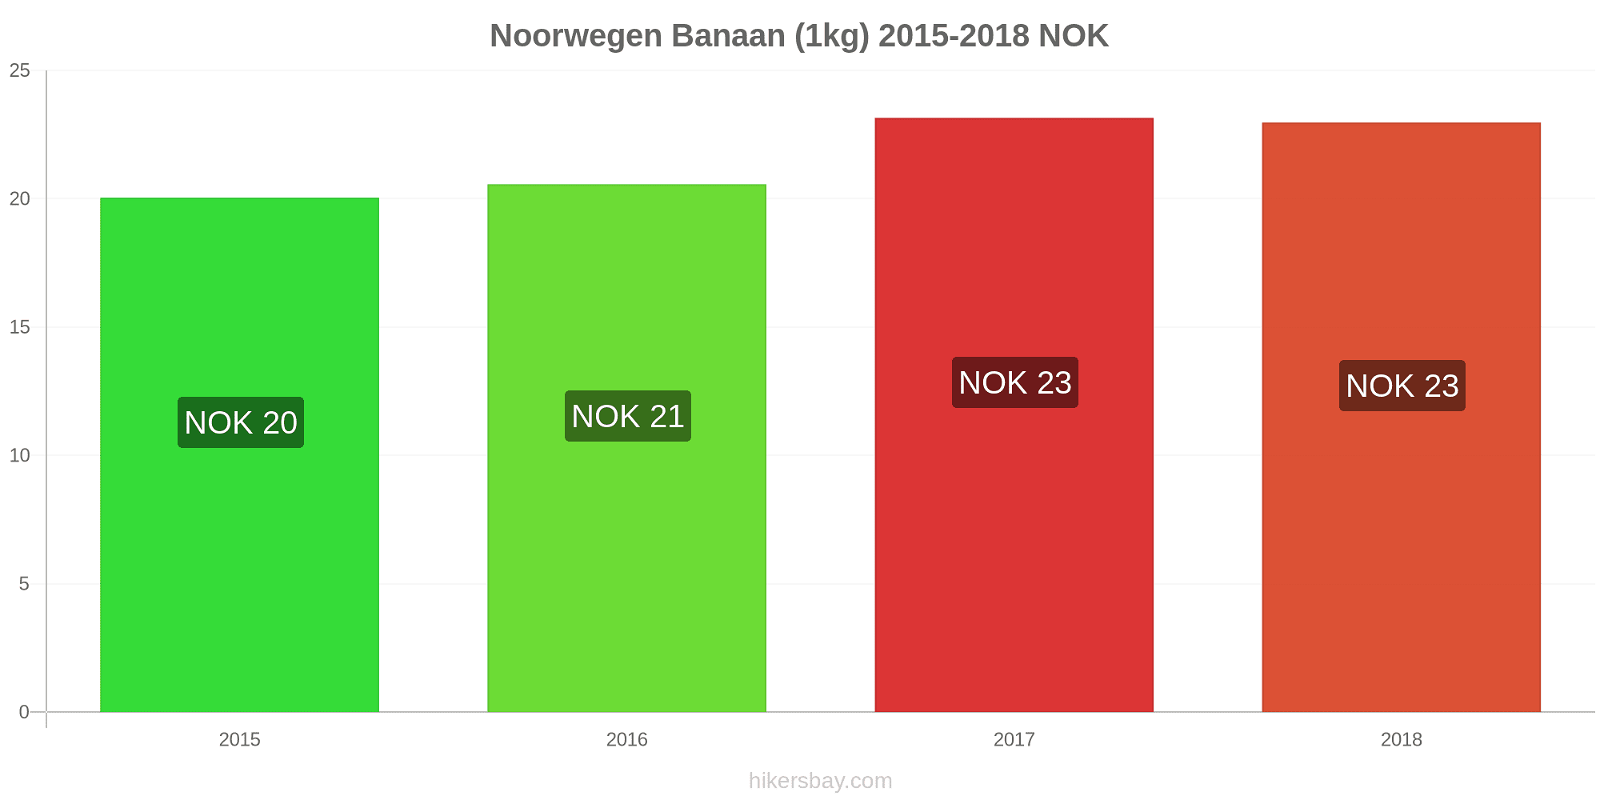 Noorwegen prijswijzigingen Bananen (1kg) hikersbay.com